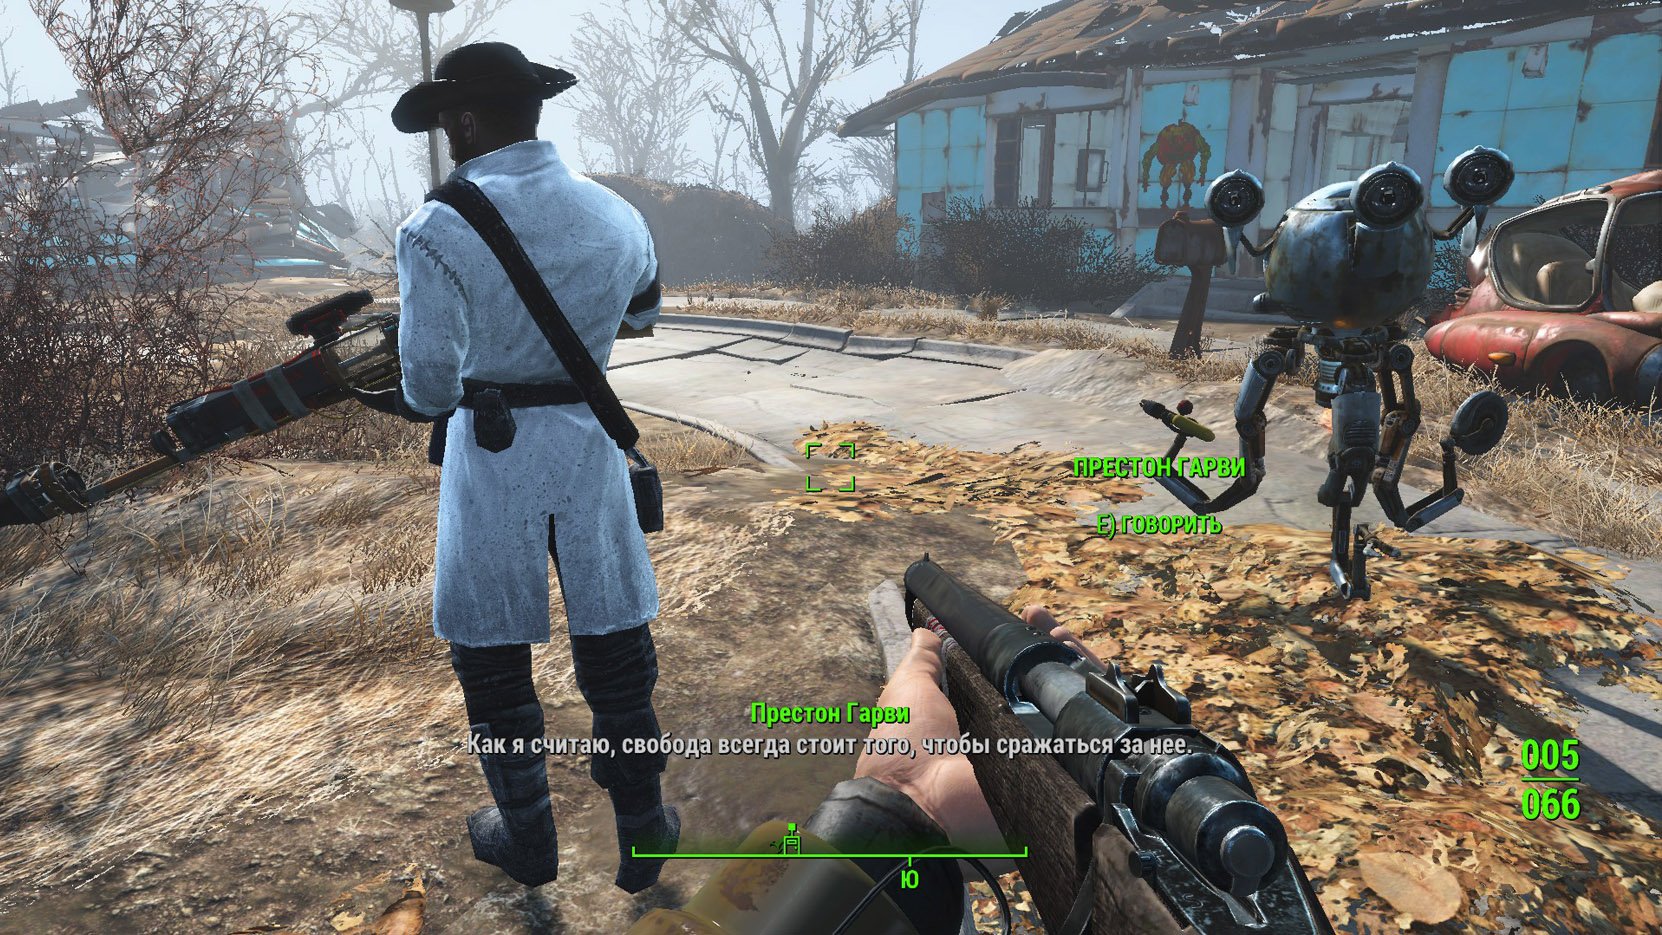 Fallout 4 где престон гарви фото 24